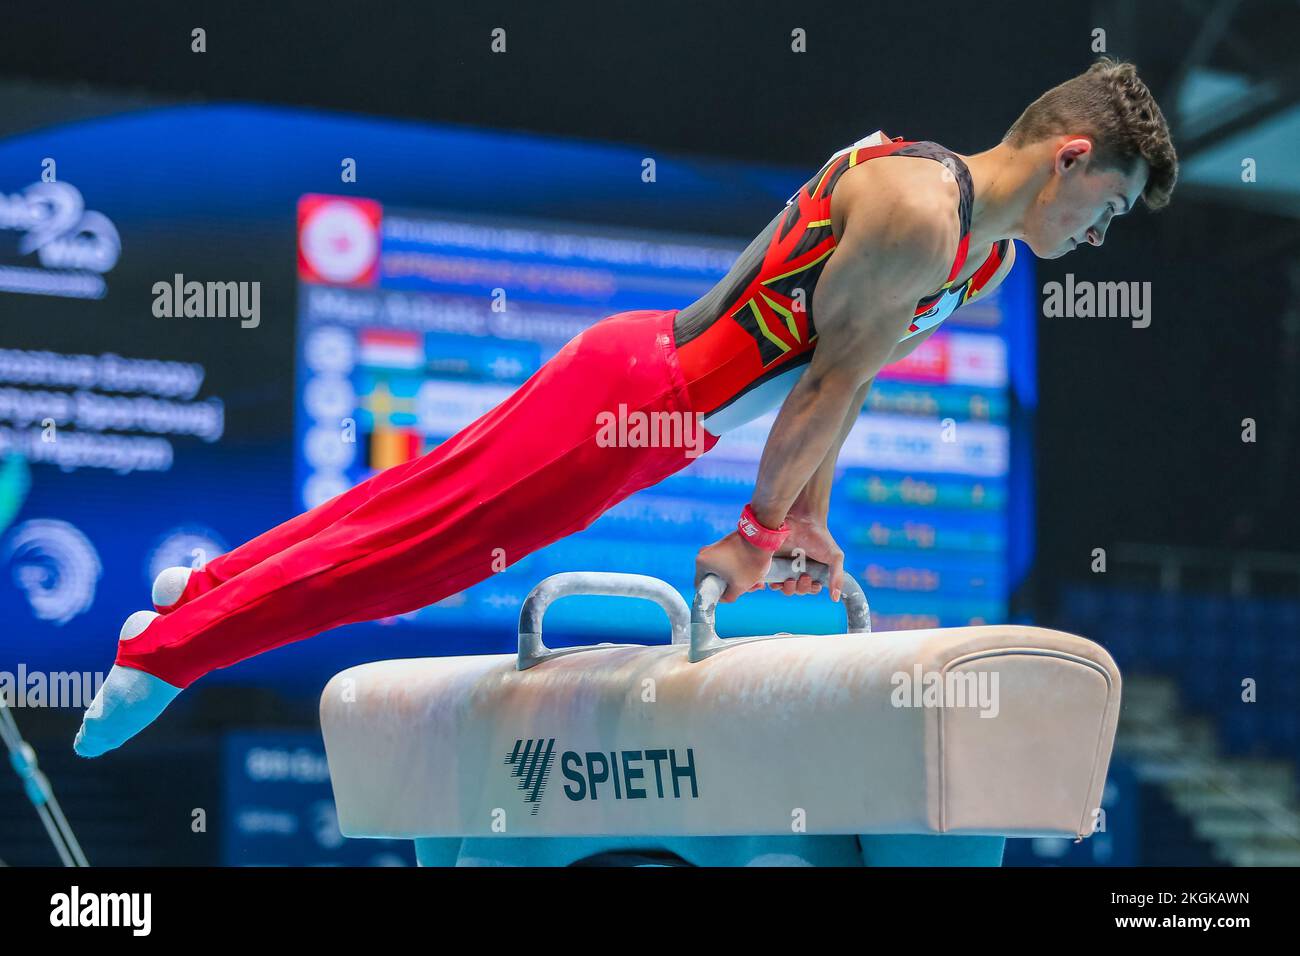 Szczecin, Pologne, 10 avril 2019: L'athlète espagnol Mir Nicolau participe au cheval de Pommel lors des championnats européens de gymnastique artistique Banque D'Images